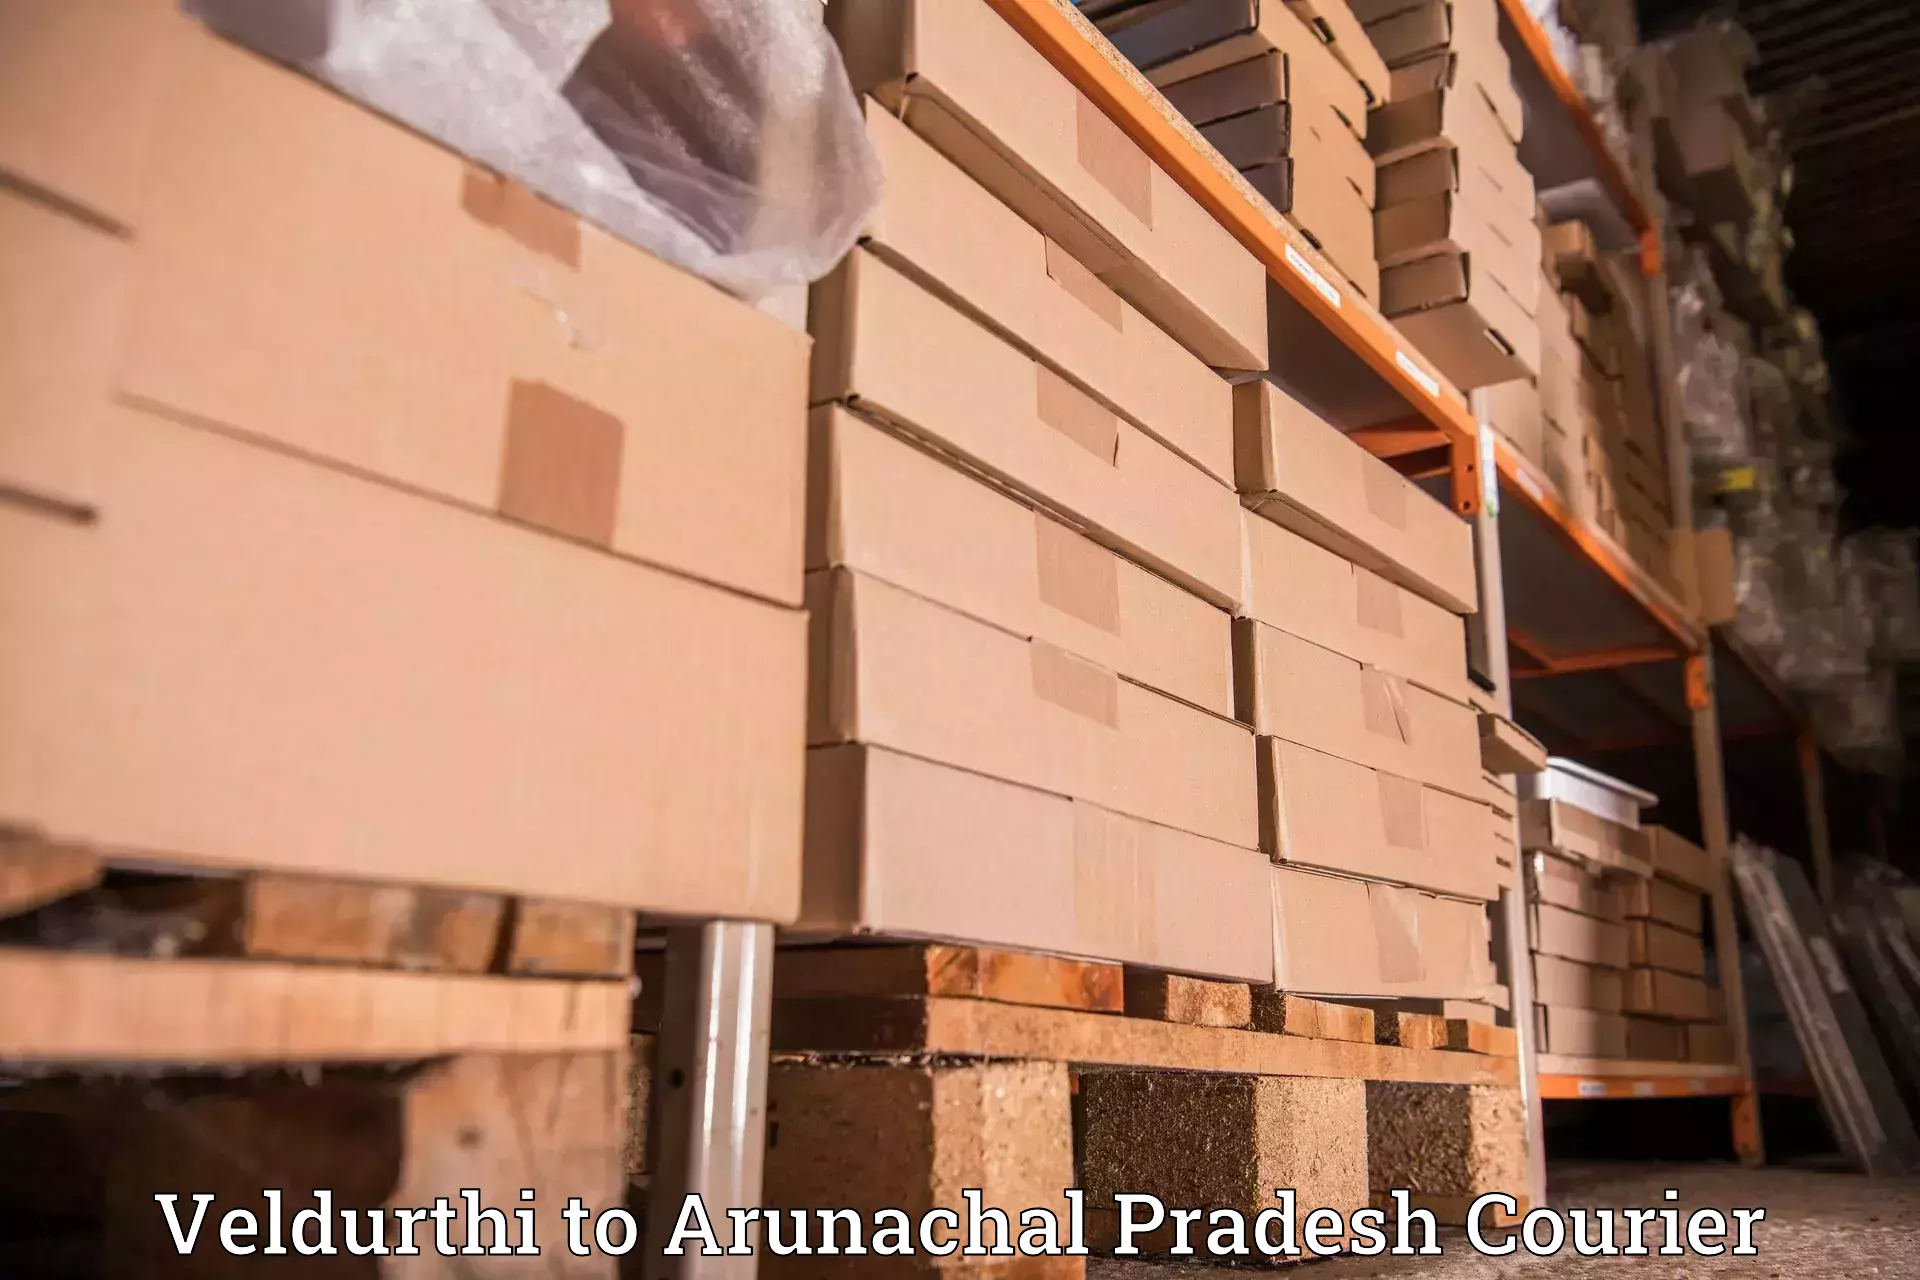 Specialized courier services Veldurthi to Arunachal Pradesh